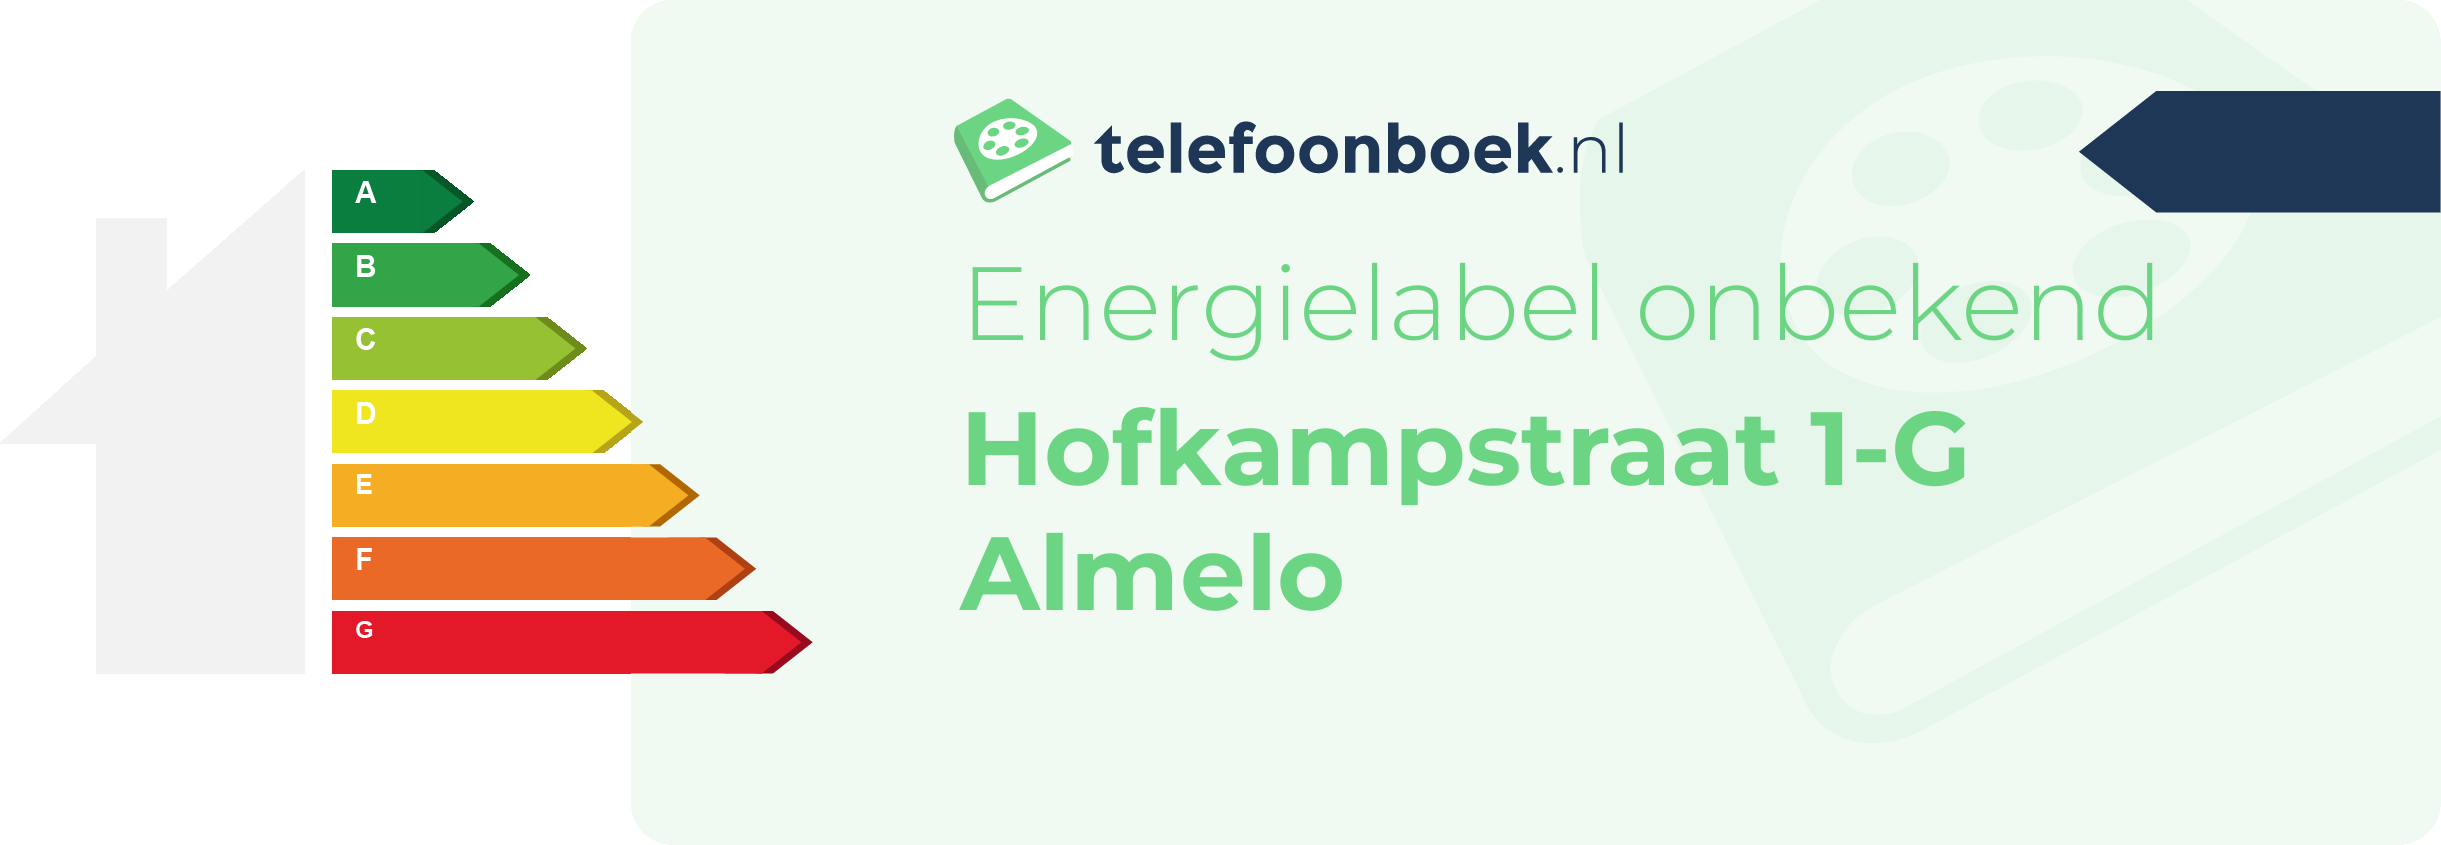 Energielabel Hofkampstraat 1-G Almelo